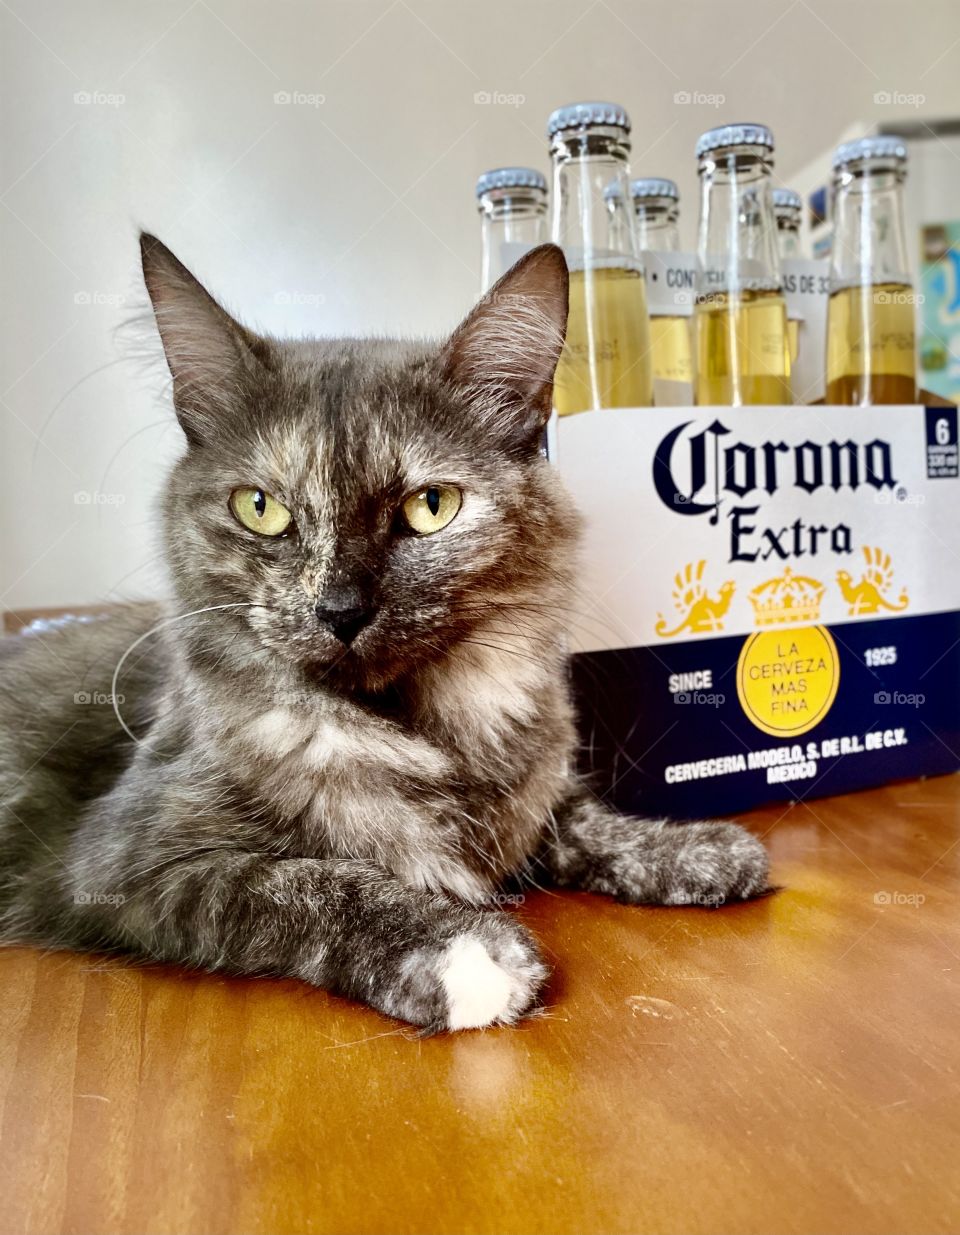 Corona cat